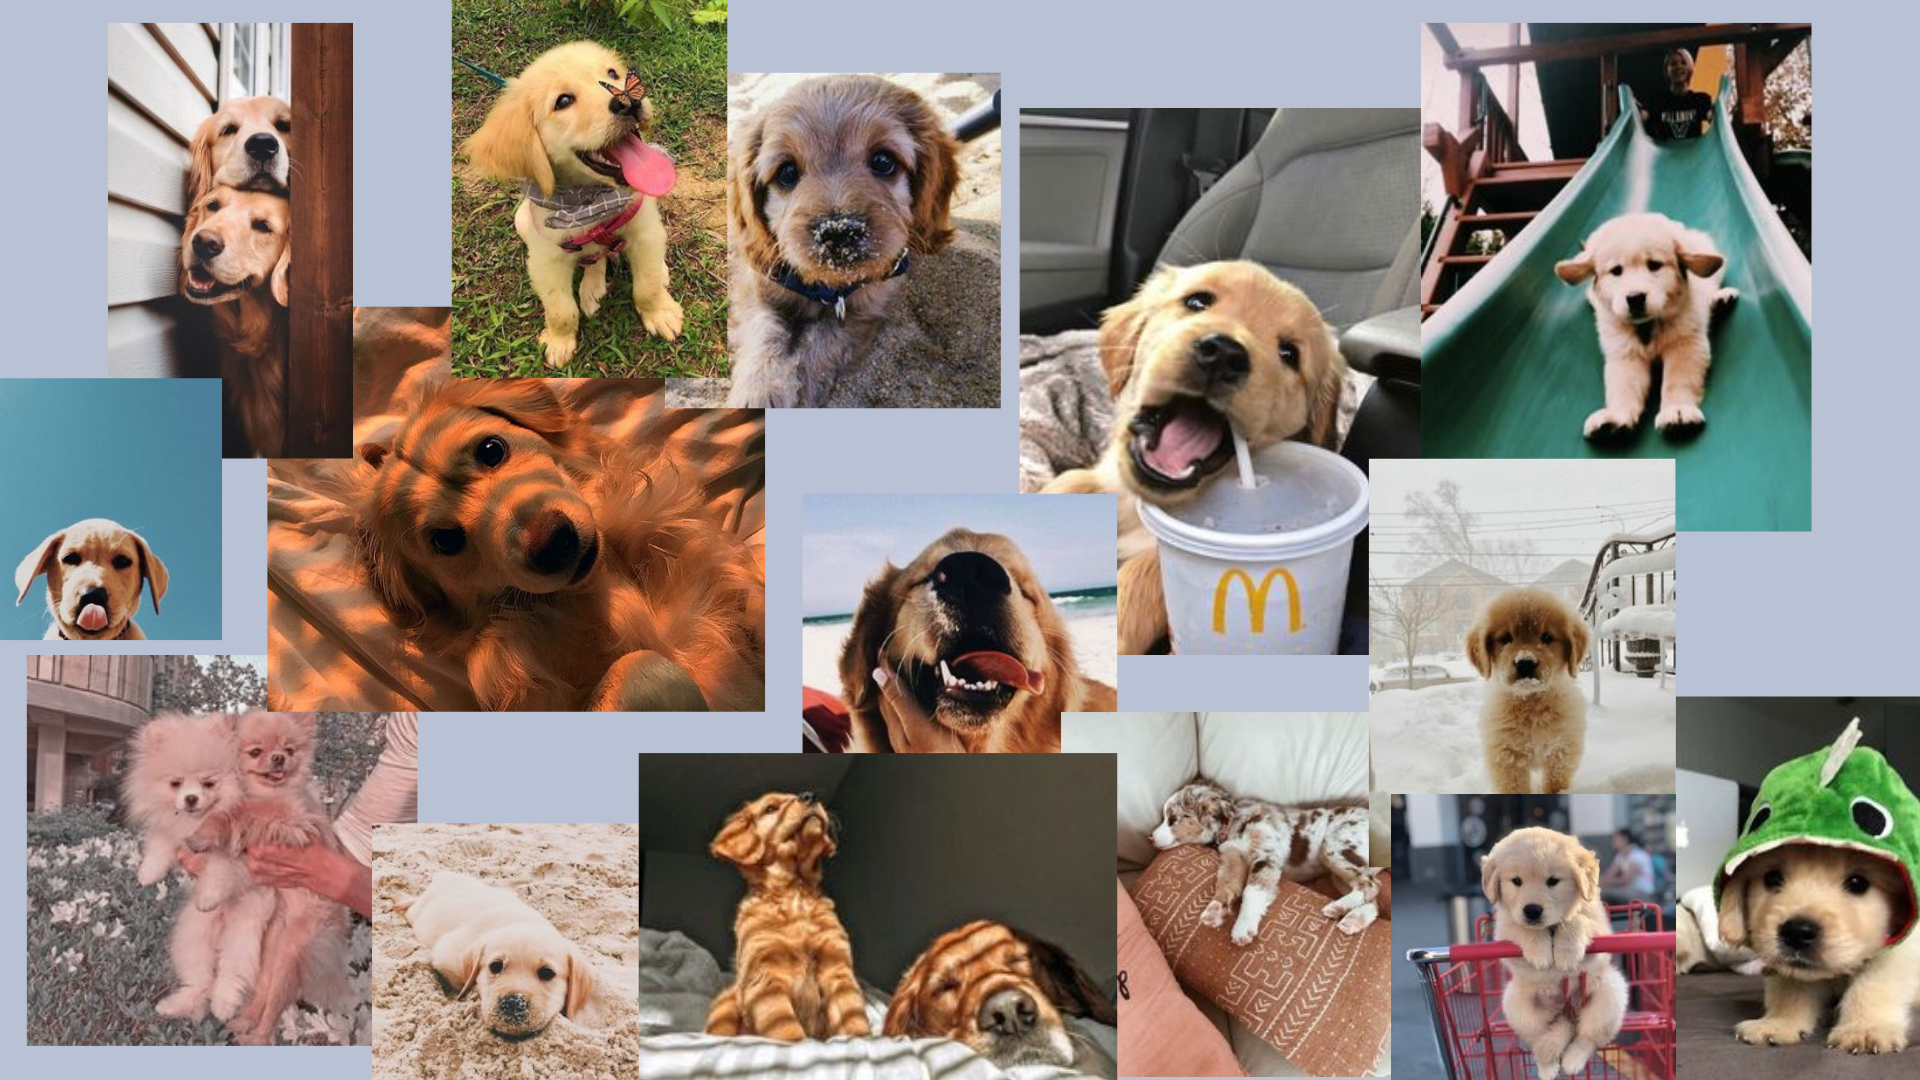 p u p p i e s. Cute laptop wallpaper, Cute dog wallpaper, Puppy background